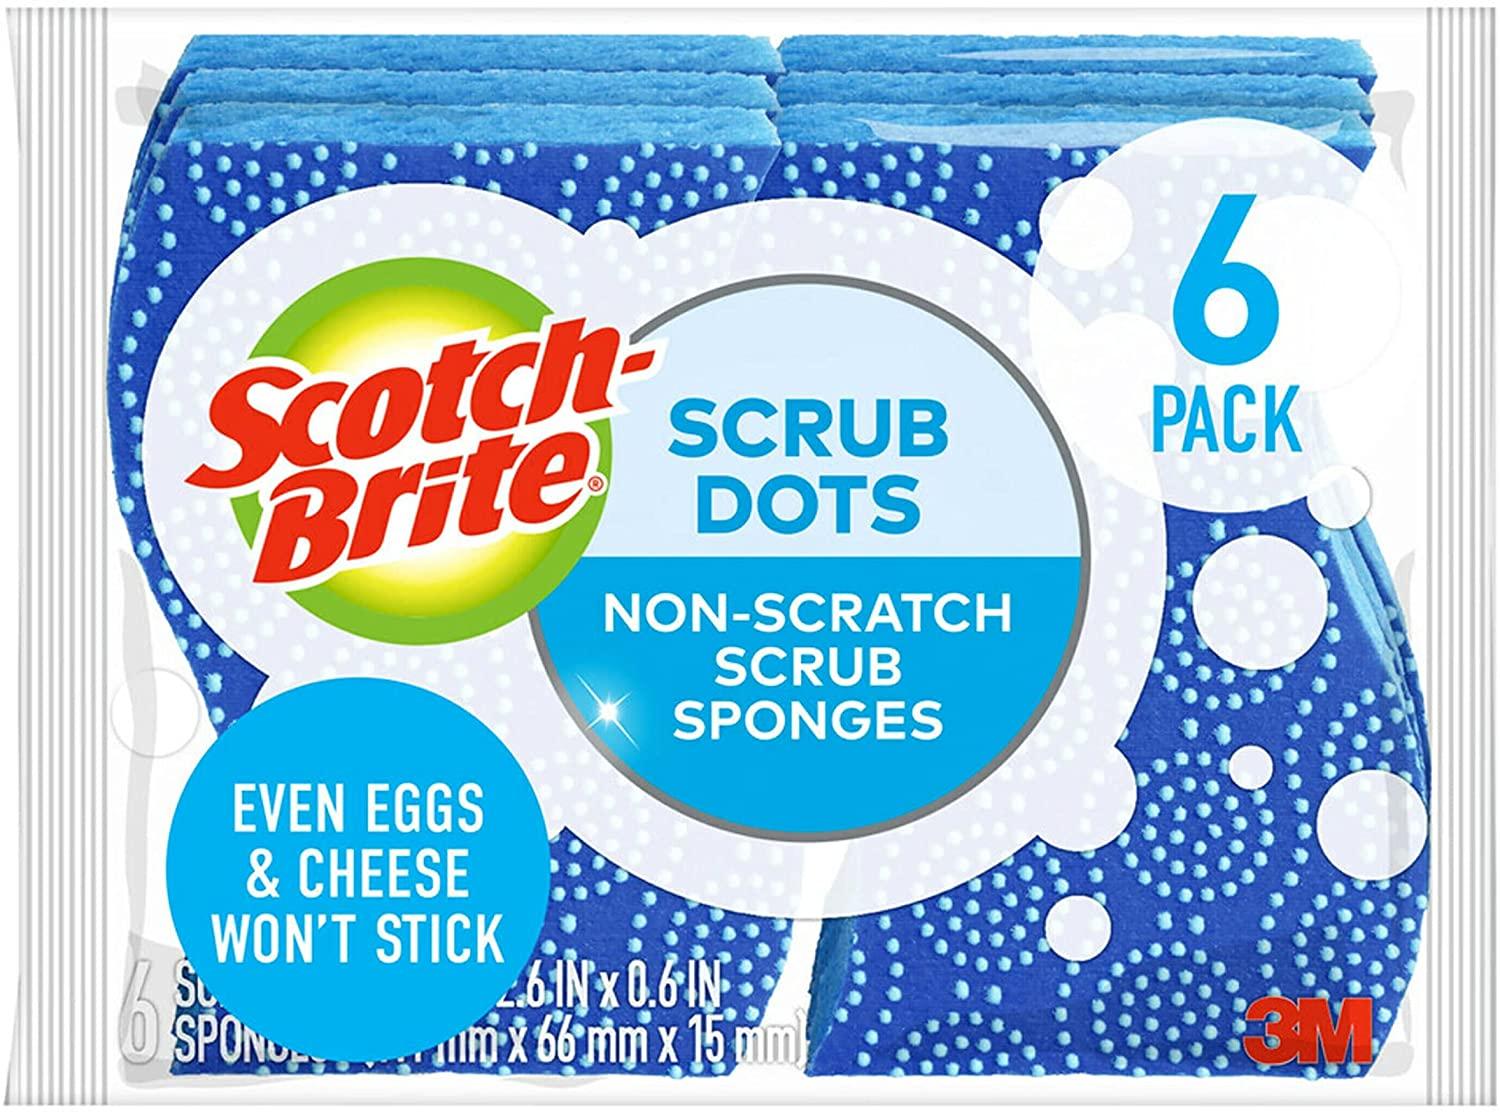 6 Scotch-Brite Scrub Dots Non-Scratch Scrub Sponge for $4.22 Shipped